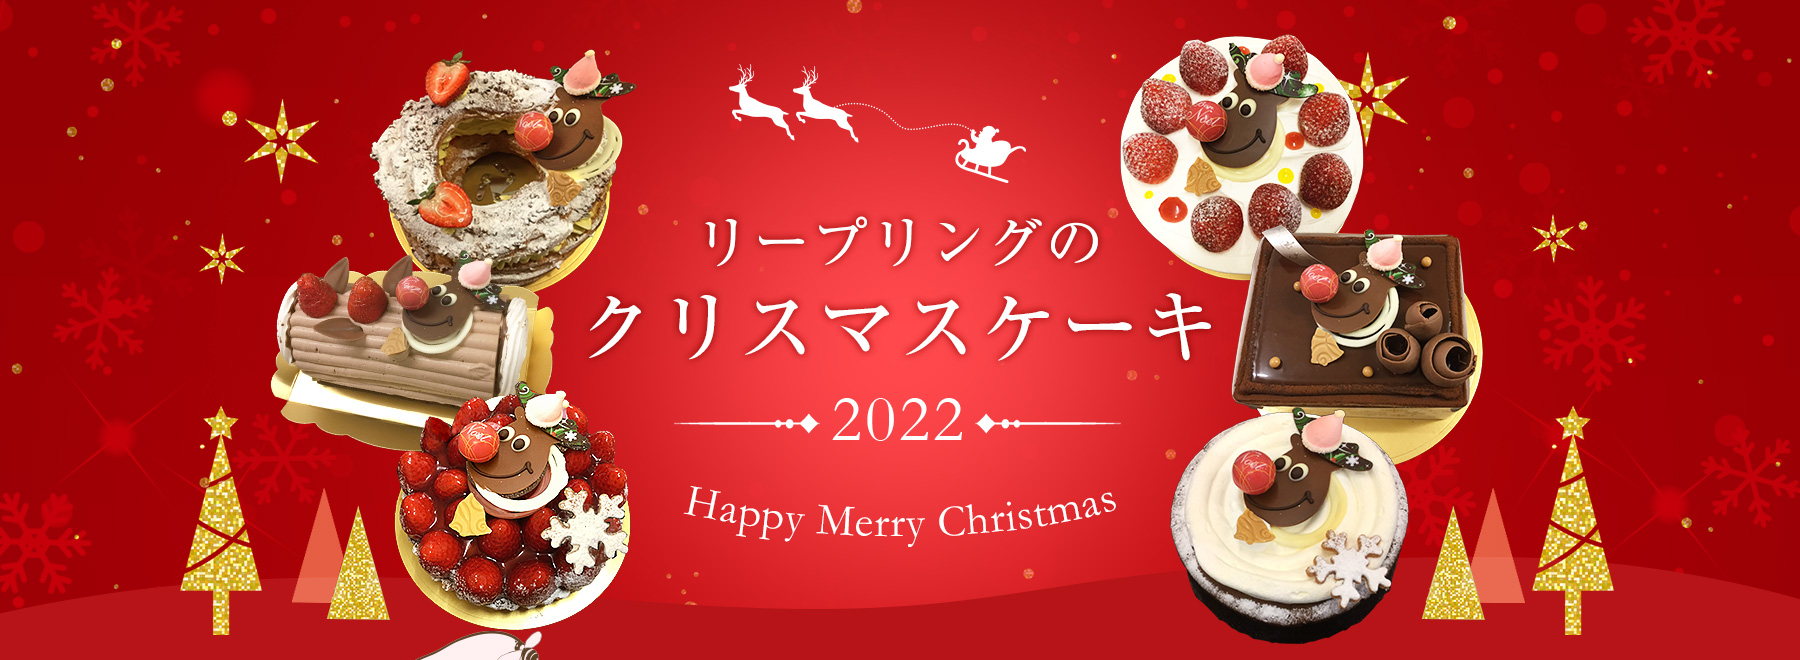 クリスマス 2022